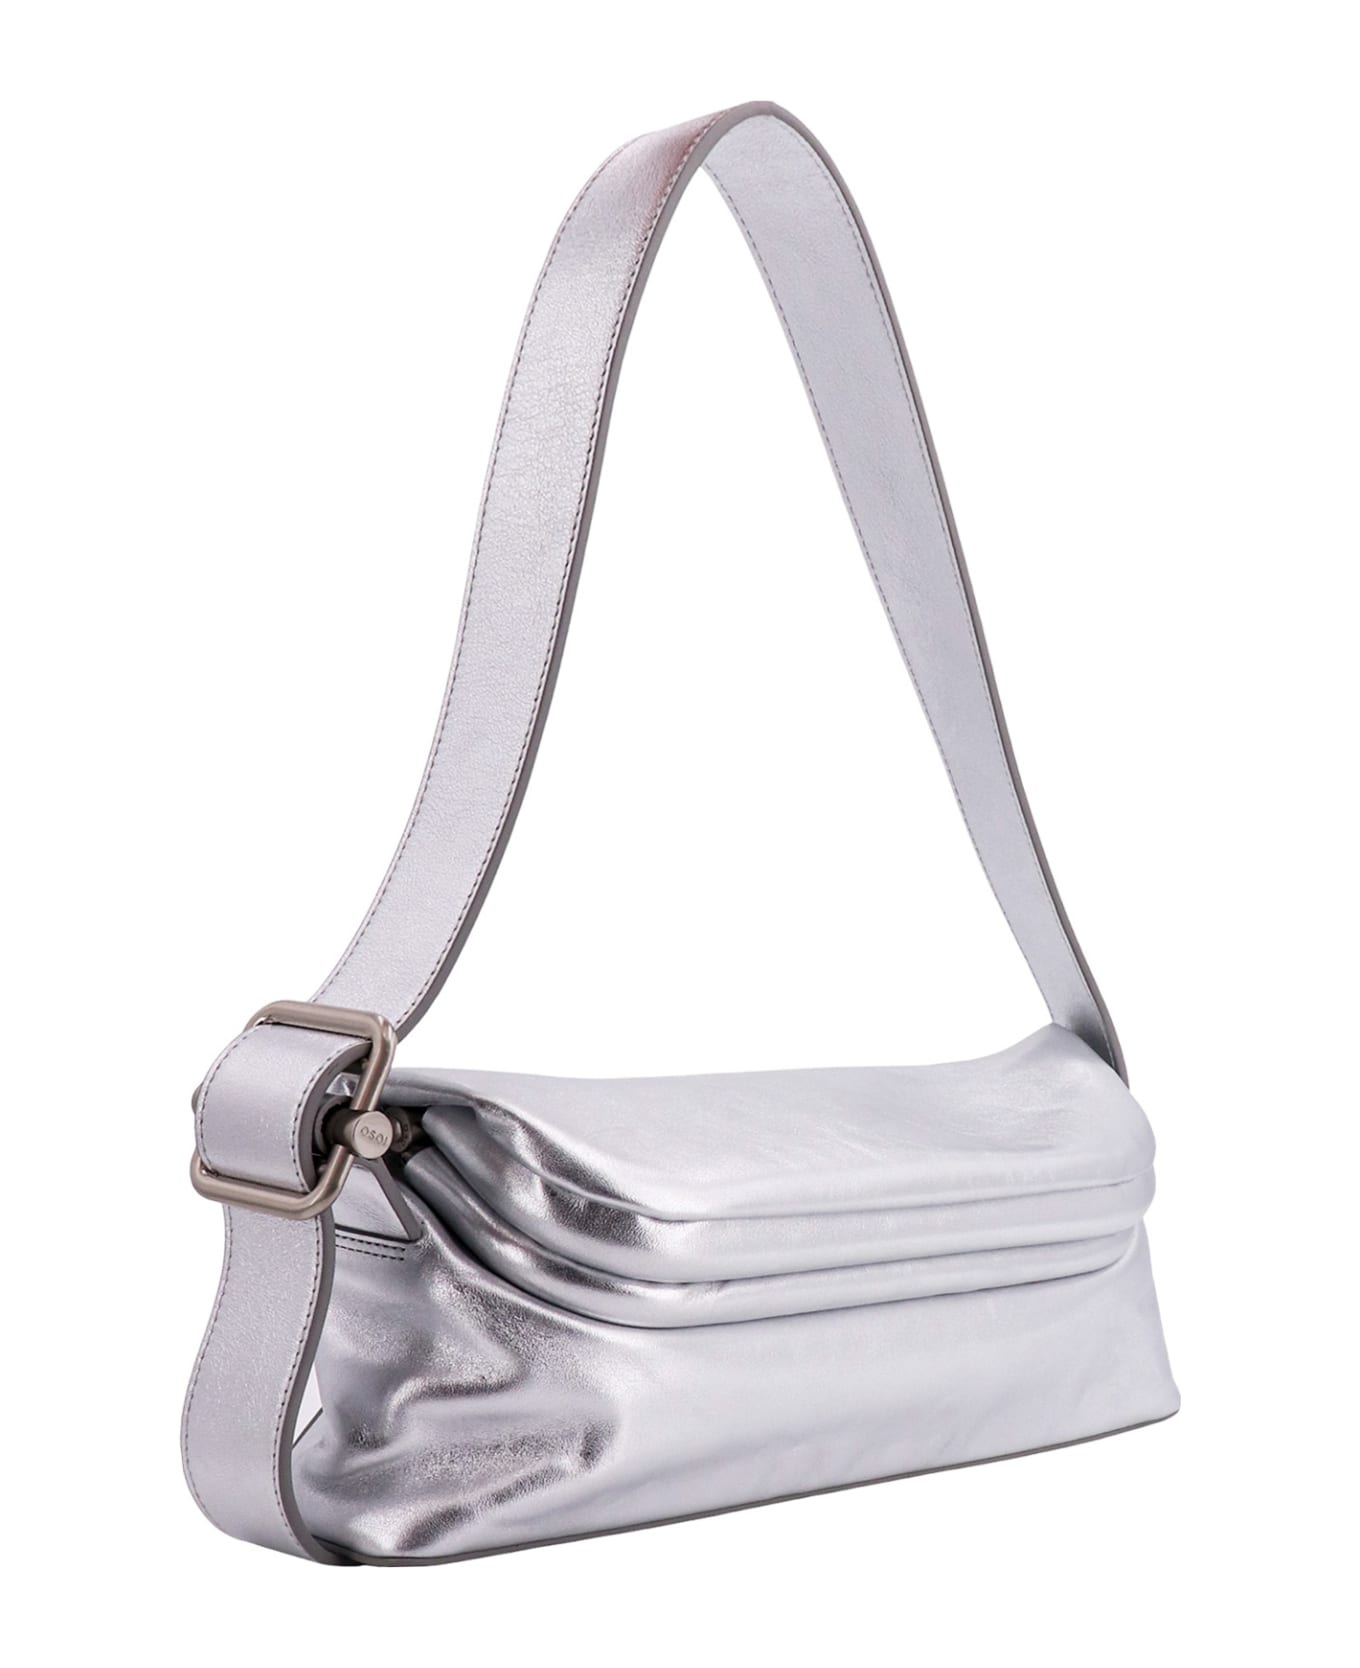 OSOI Folder Brot Shoulder Bag - Silver